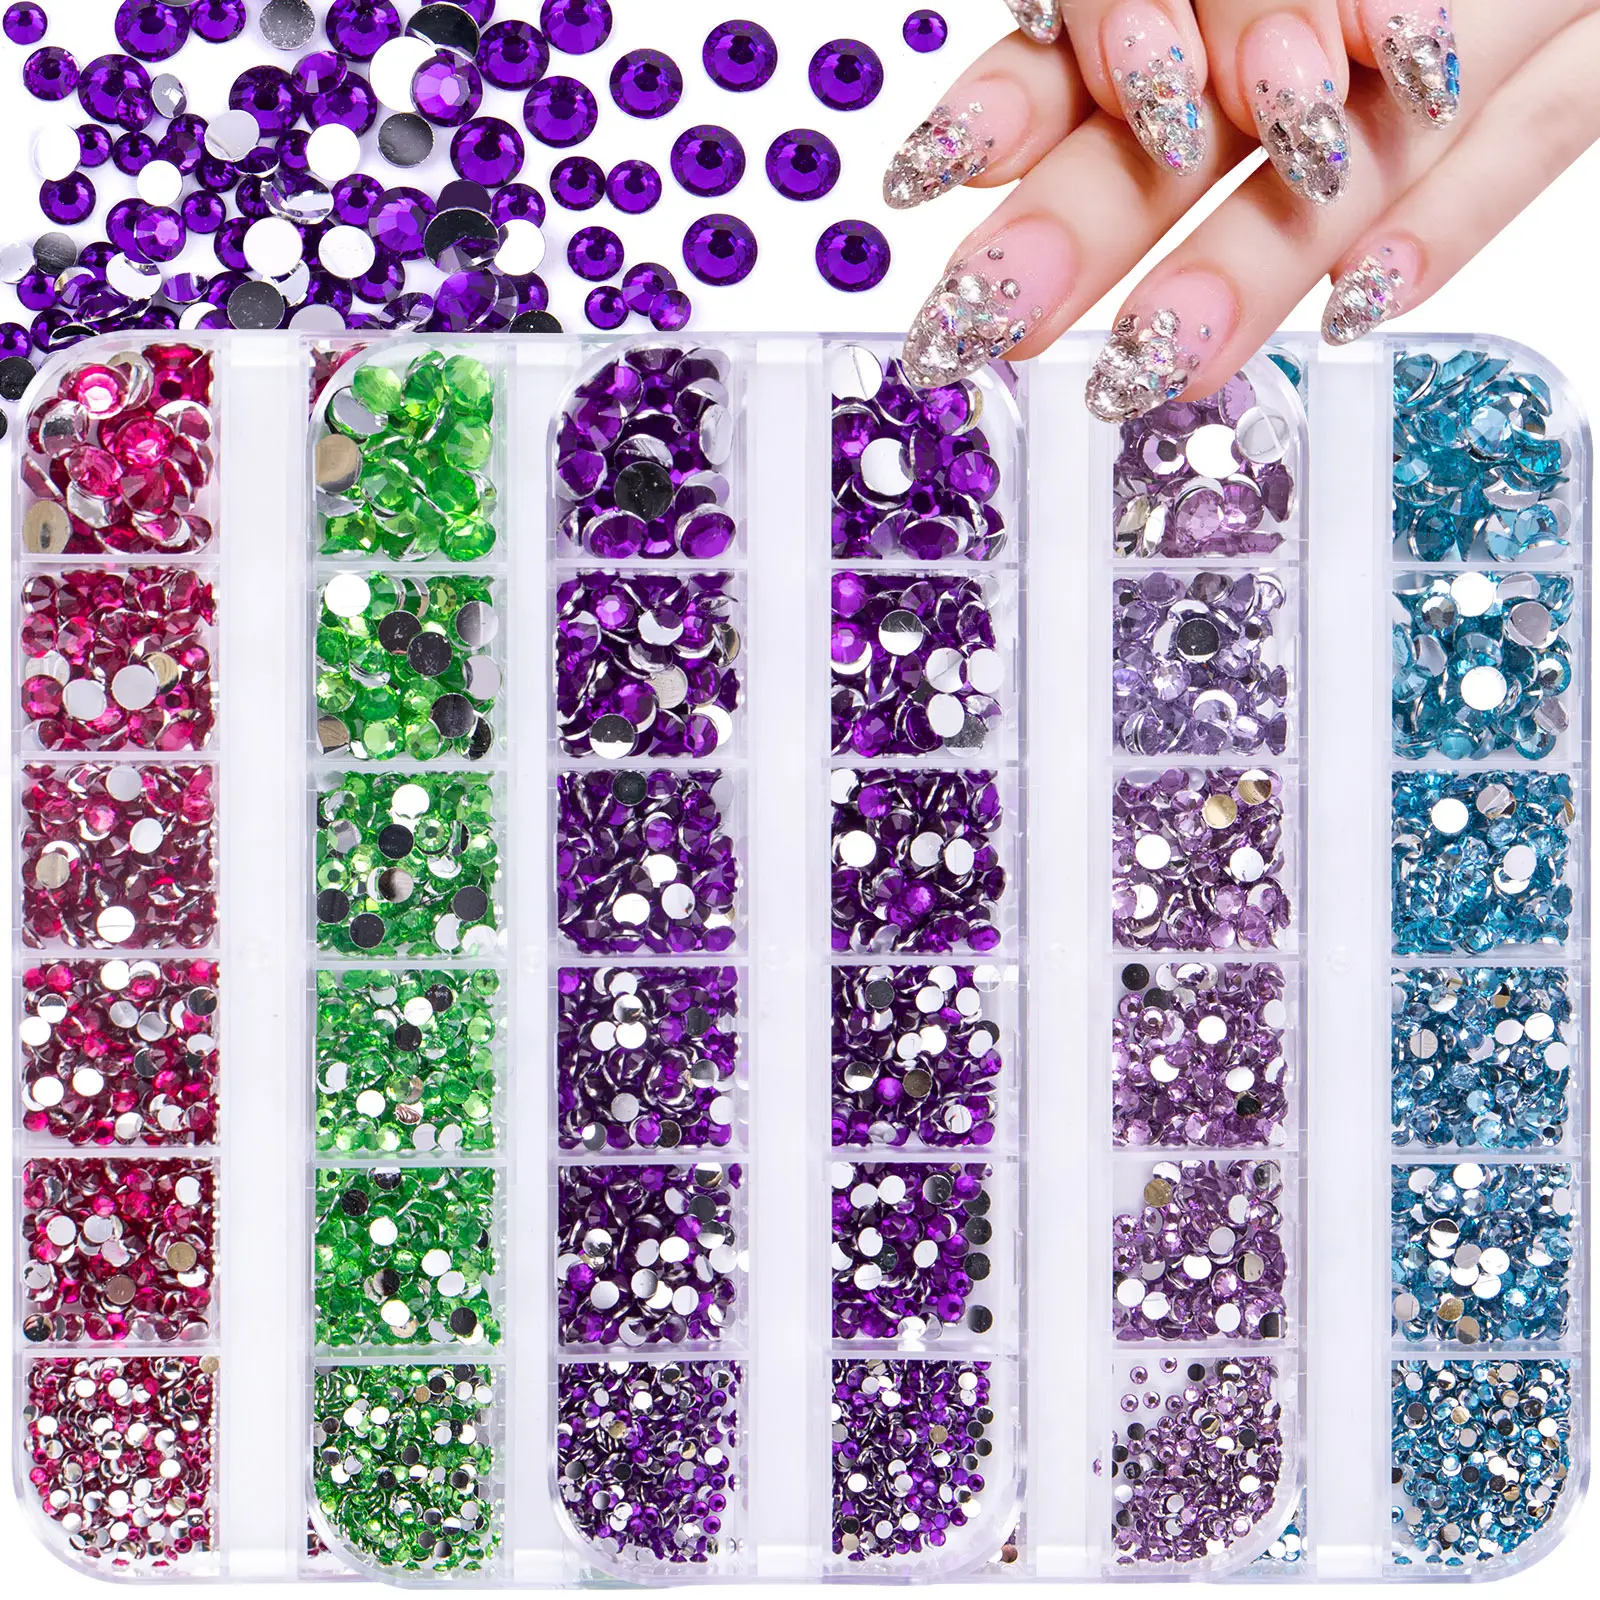 Bijoux en résine 12 grilles explosives pour ongles en diamant fond argenté mixte couleur unie acrylique fond plat diamant d'art pour ongles strass